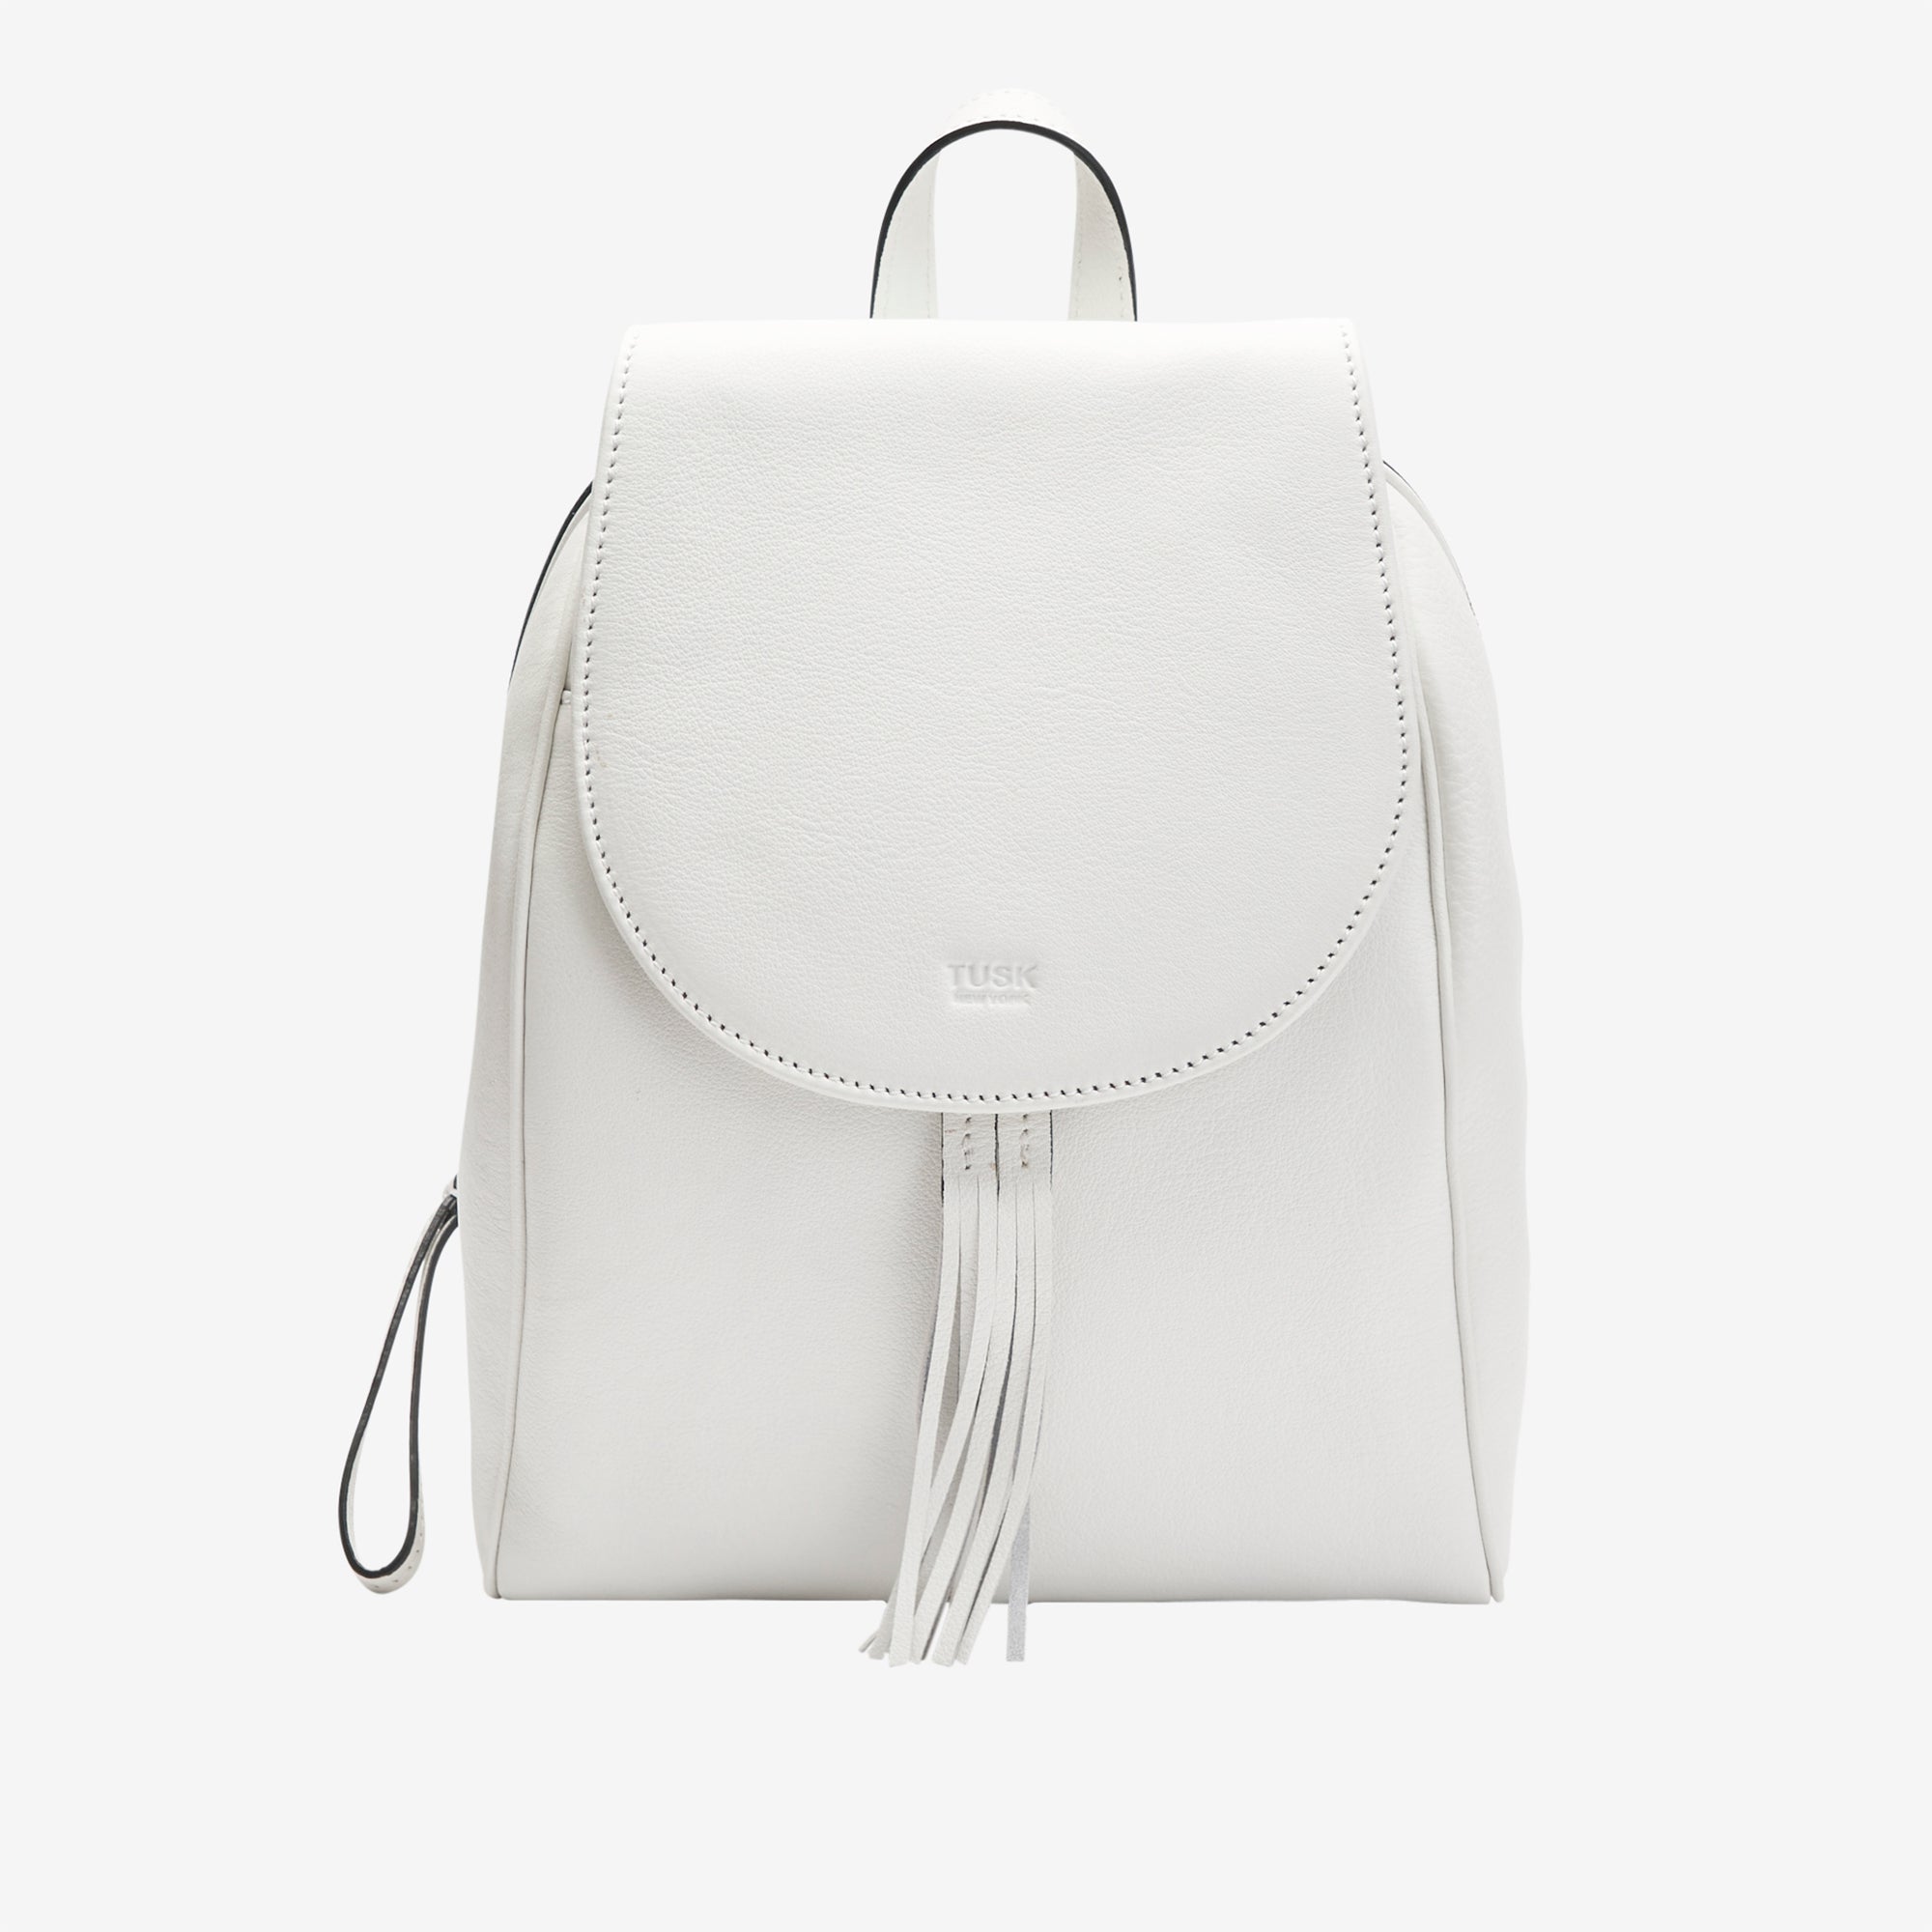 tusk-9898-rupi-pebblegrain-leather-backpack-white-front